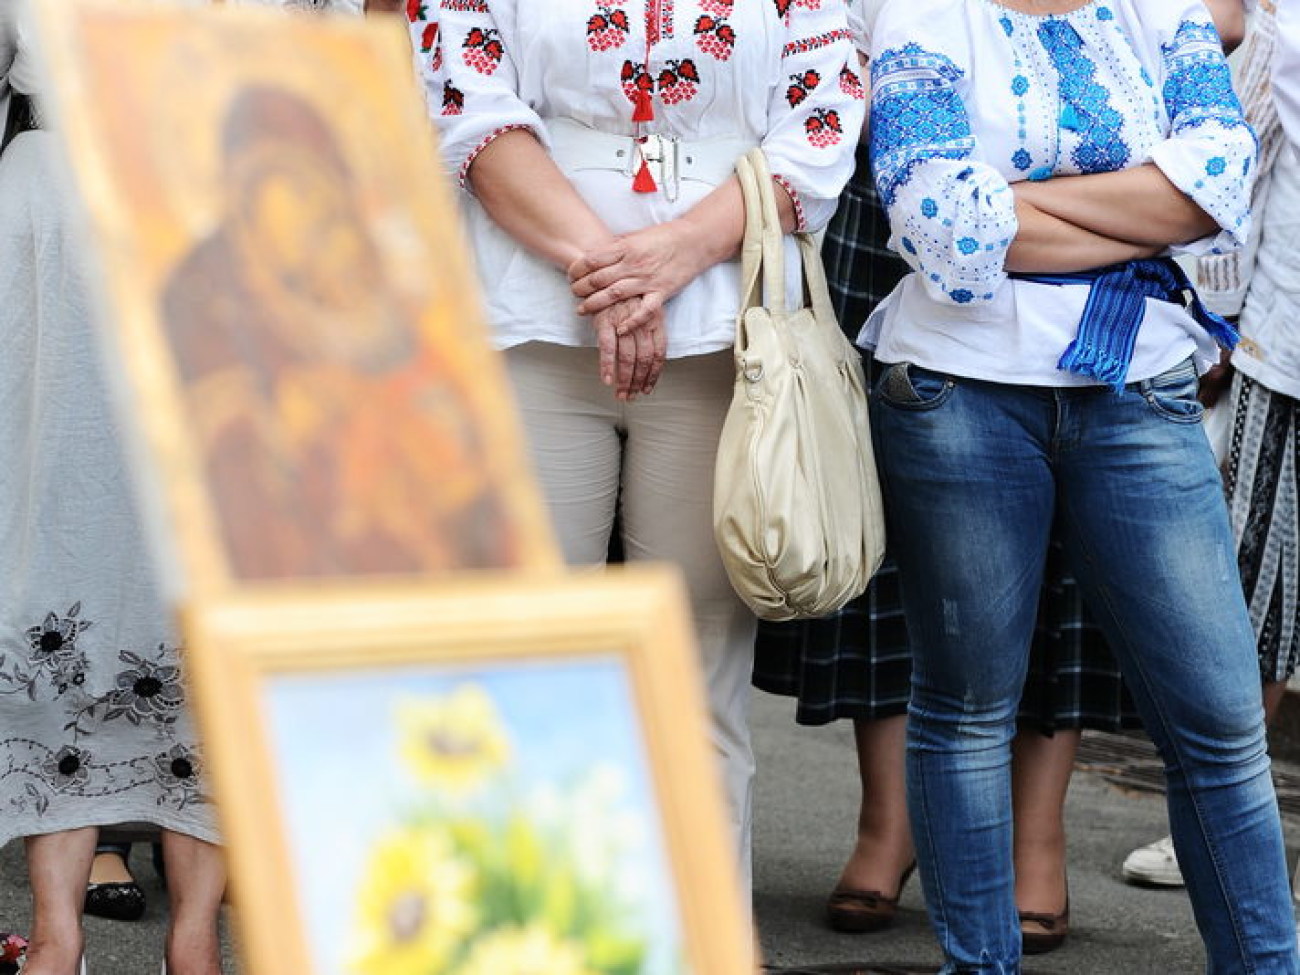 Женщины-мастерицы пикетировали Президента, 14 мая 2013г.